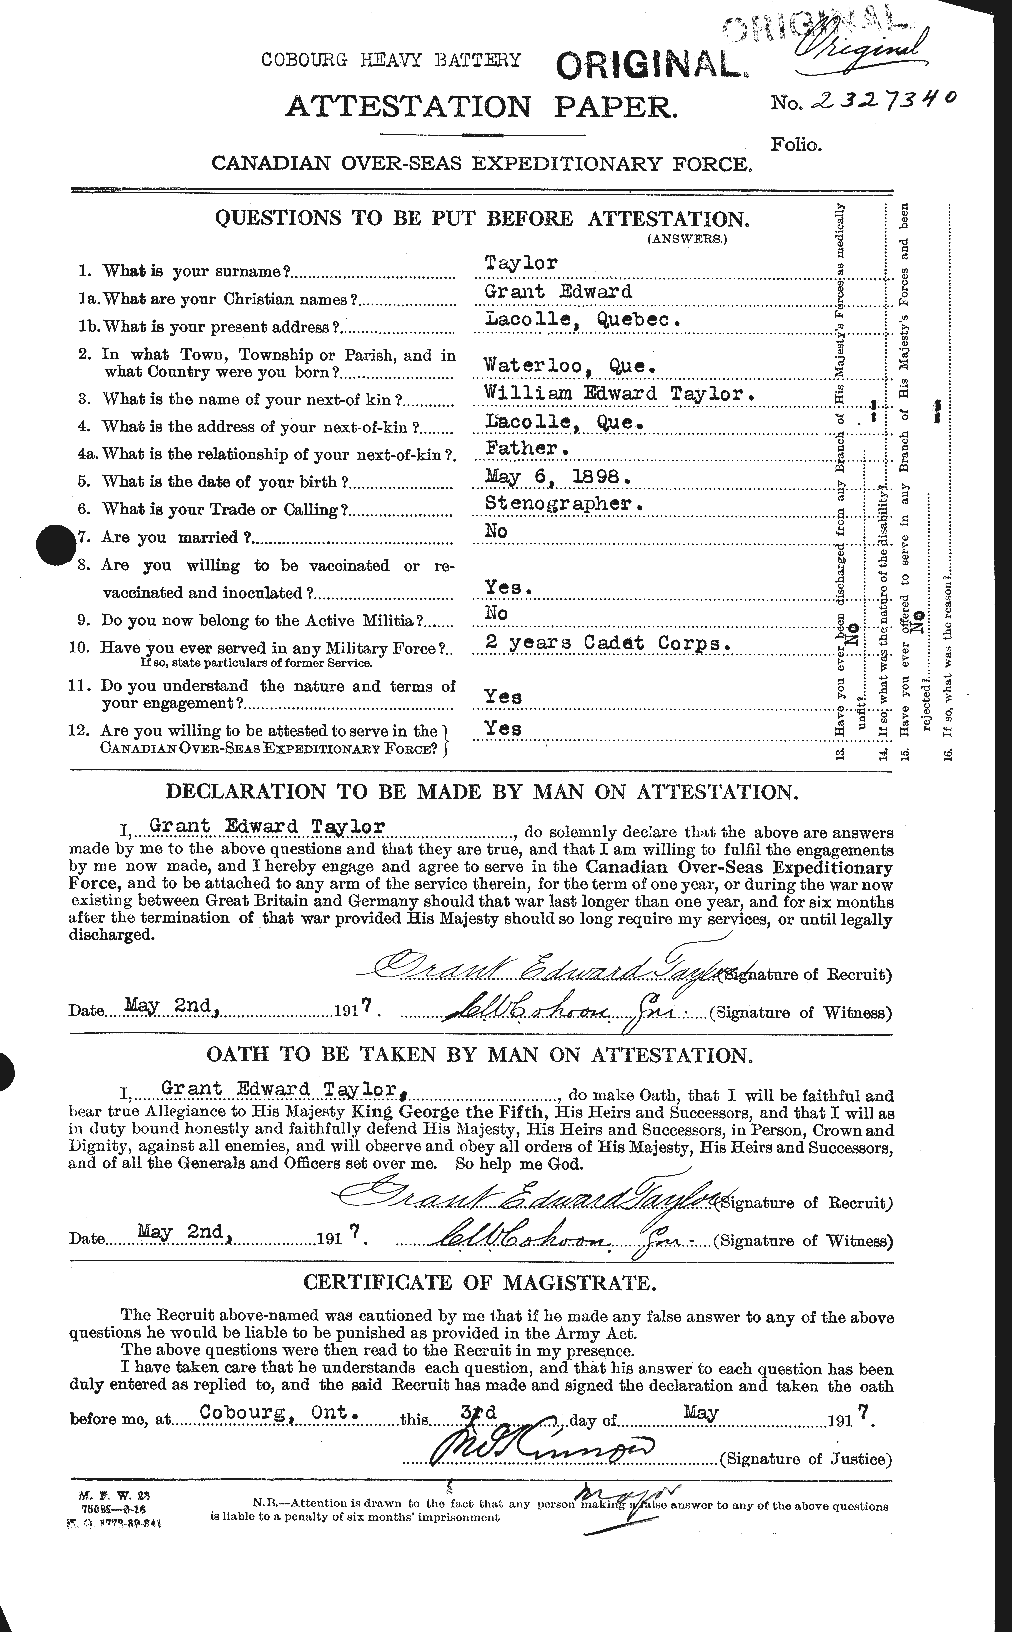 Dossiers du Personnel de la Première Guerre mondiale - CEC 626393a